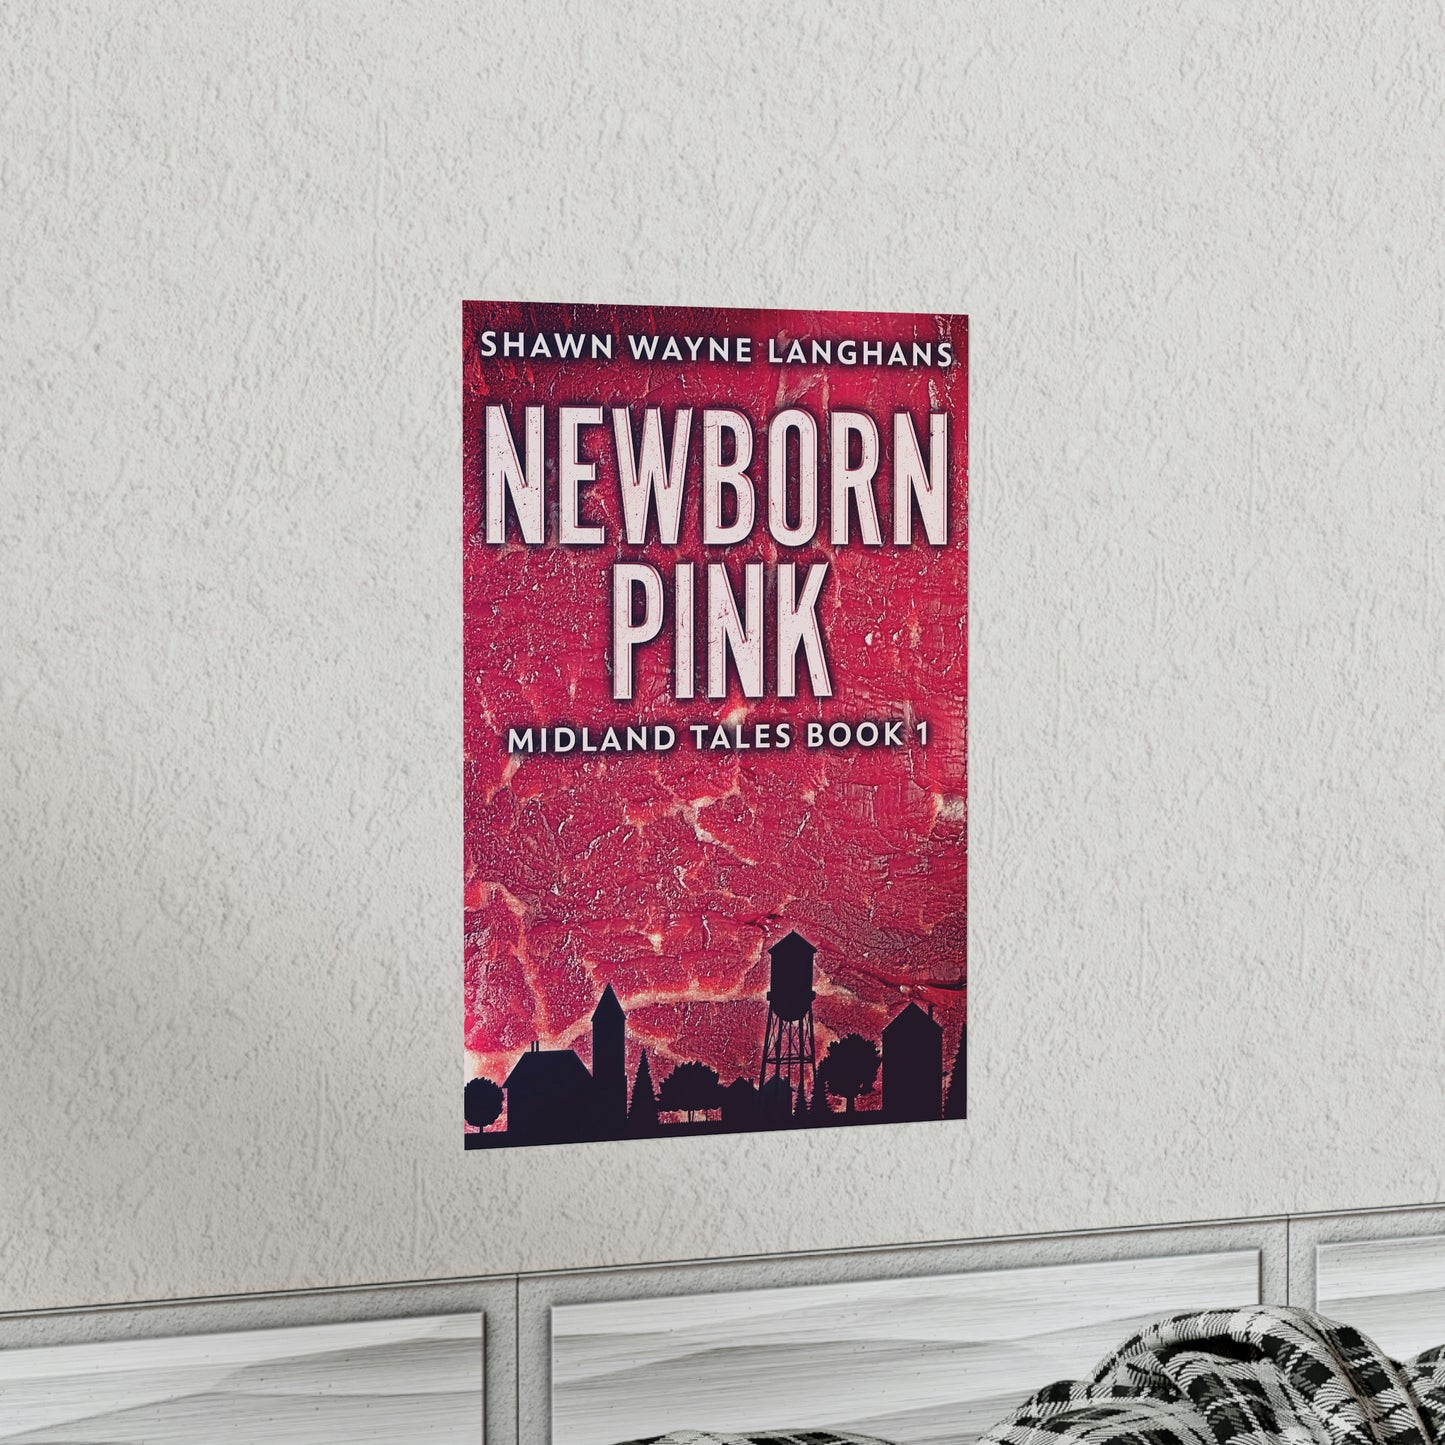 Newborn Pink - Matte Poster